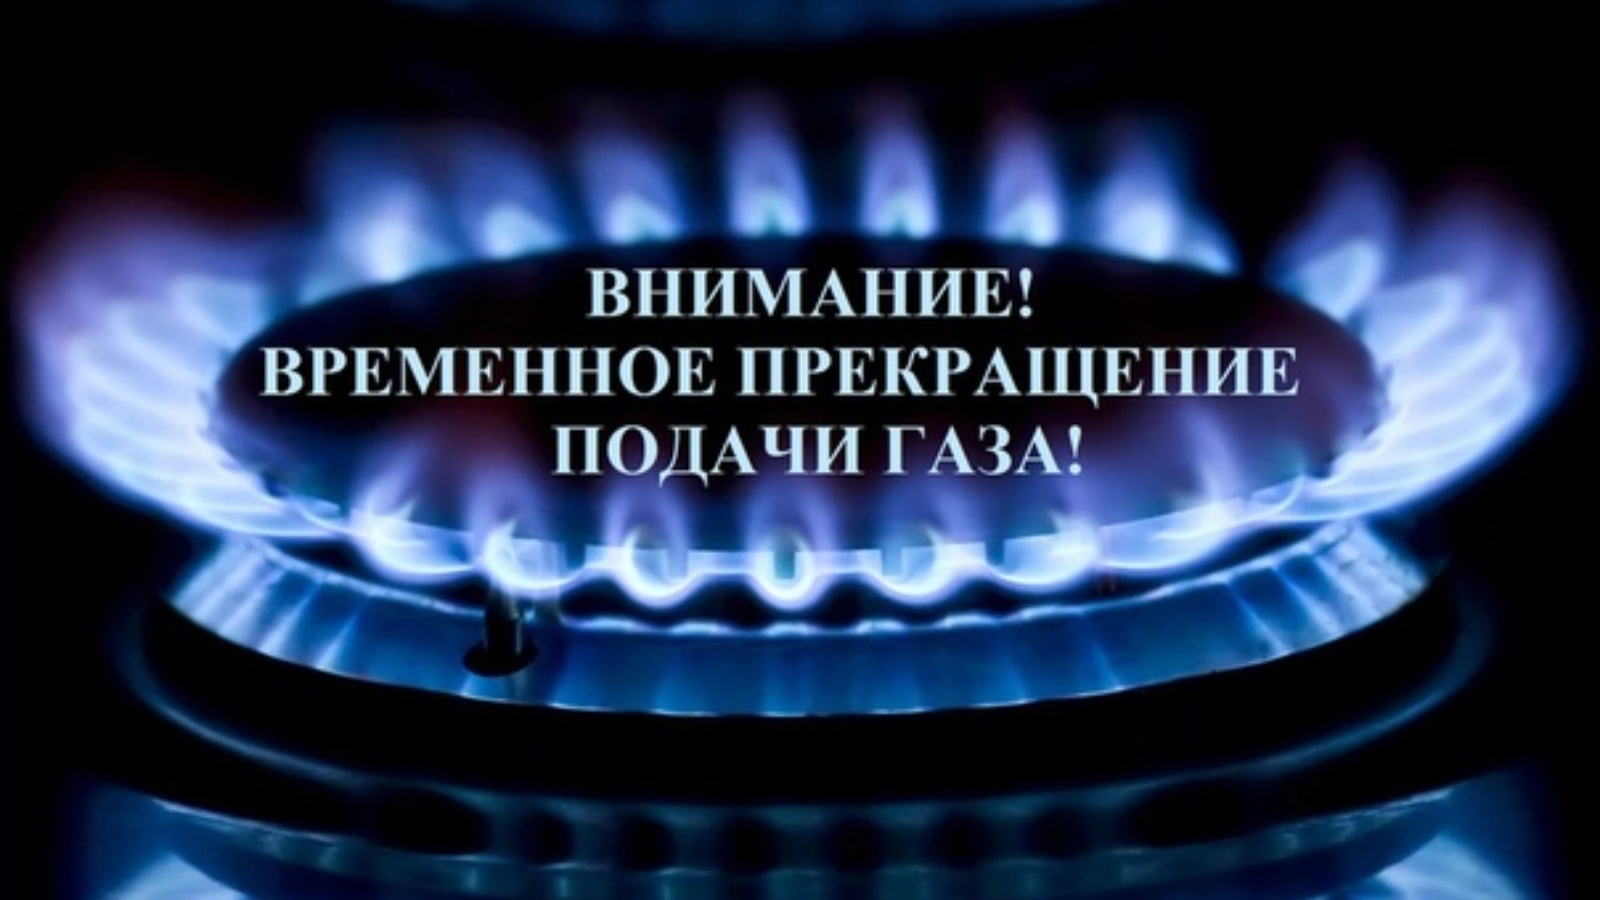 Прекращение подачи газа с 08:00 ч. 04.06.2024 г. до 08:00 ч. 05.06.2024 г.!.